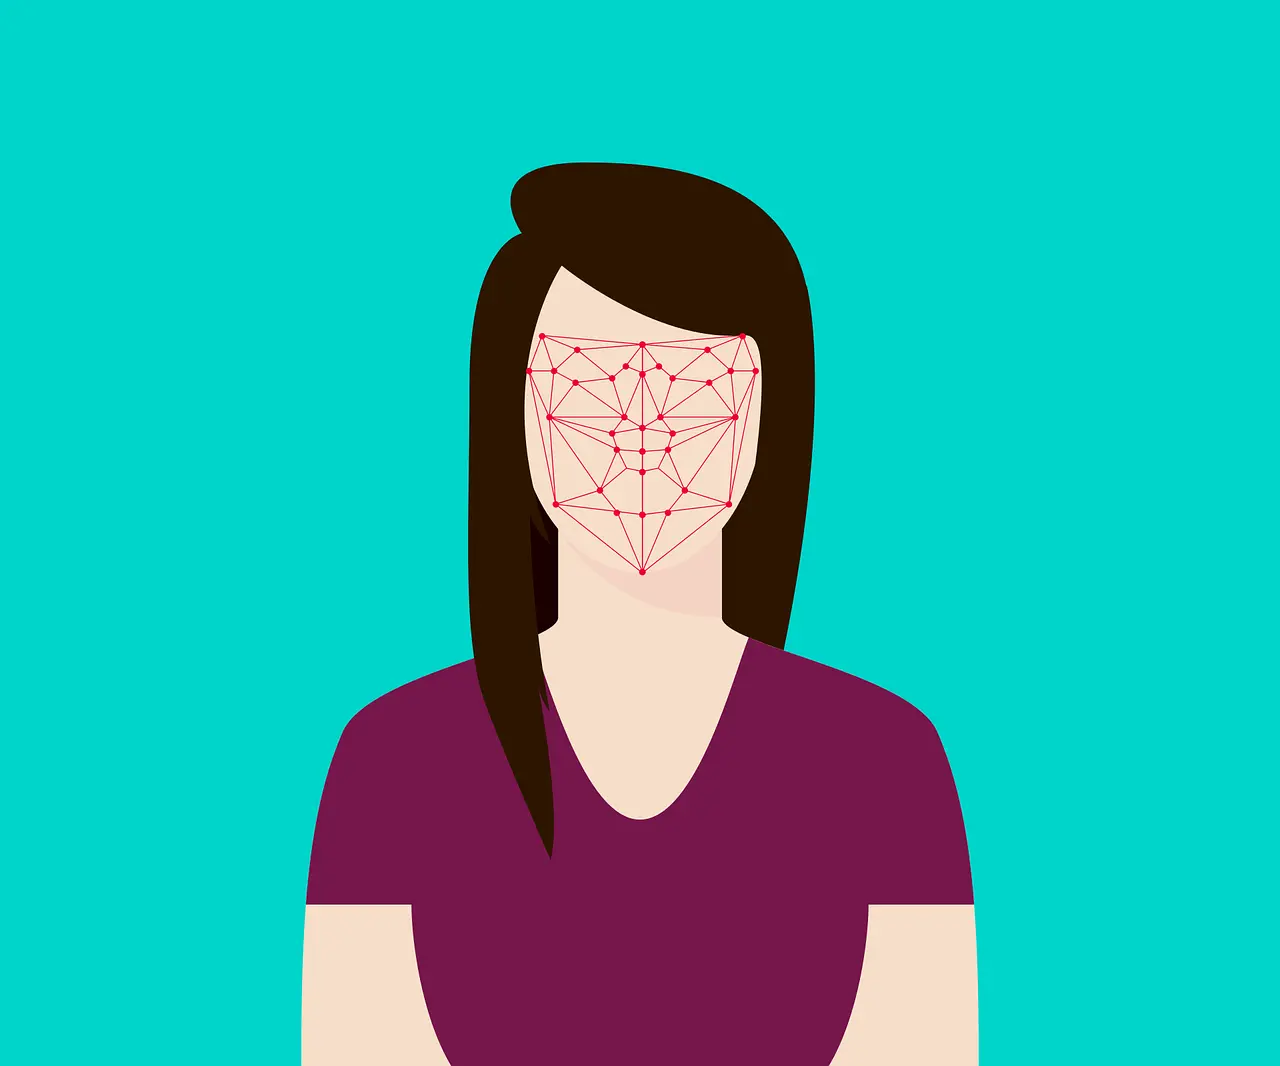 Biometrics with facial scan